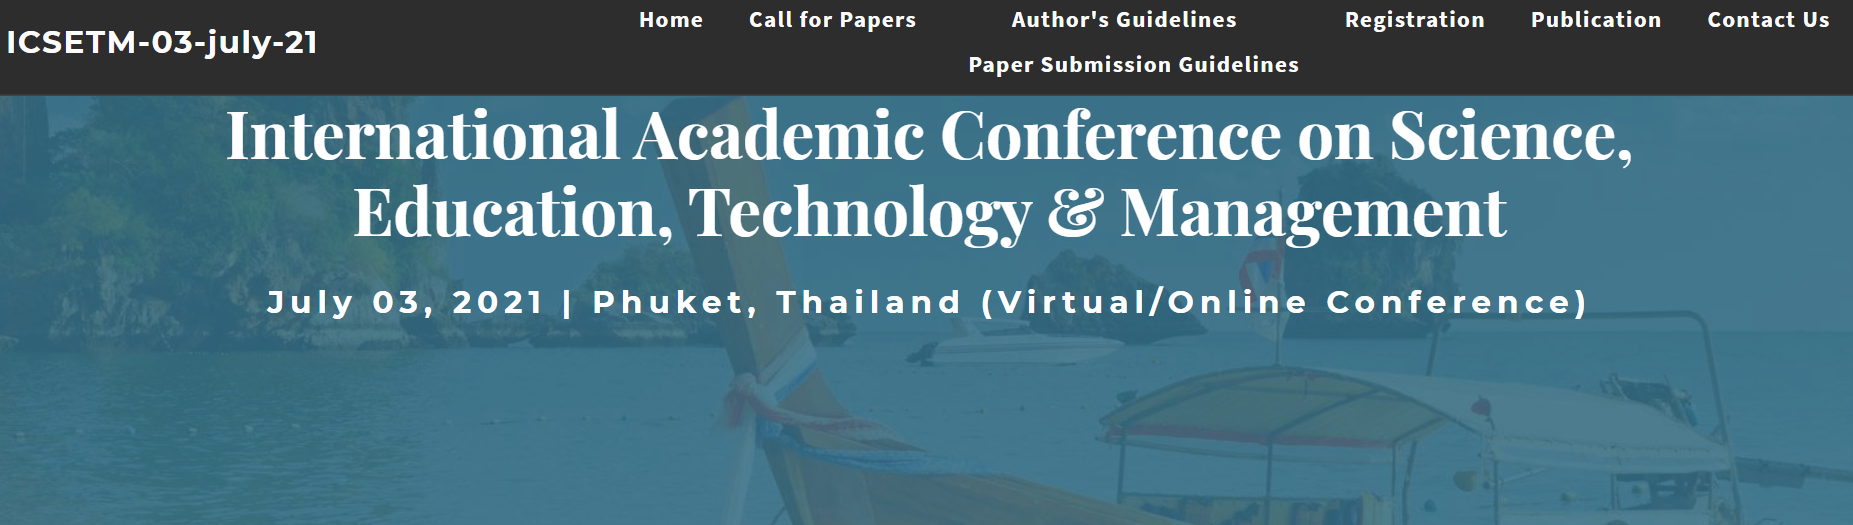 International Academic Conference on Science, Education, Technology & Management, Phuket, Thailand,Phuket,Thailand